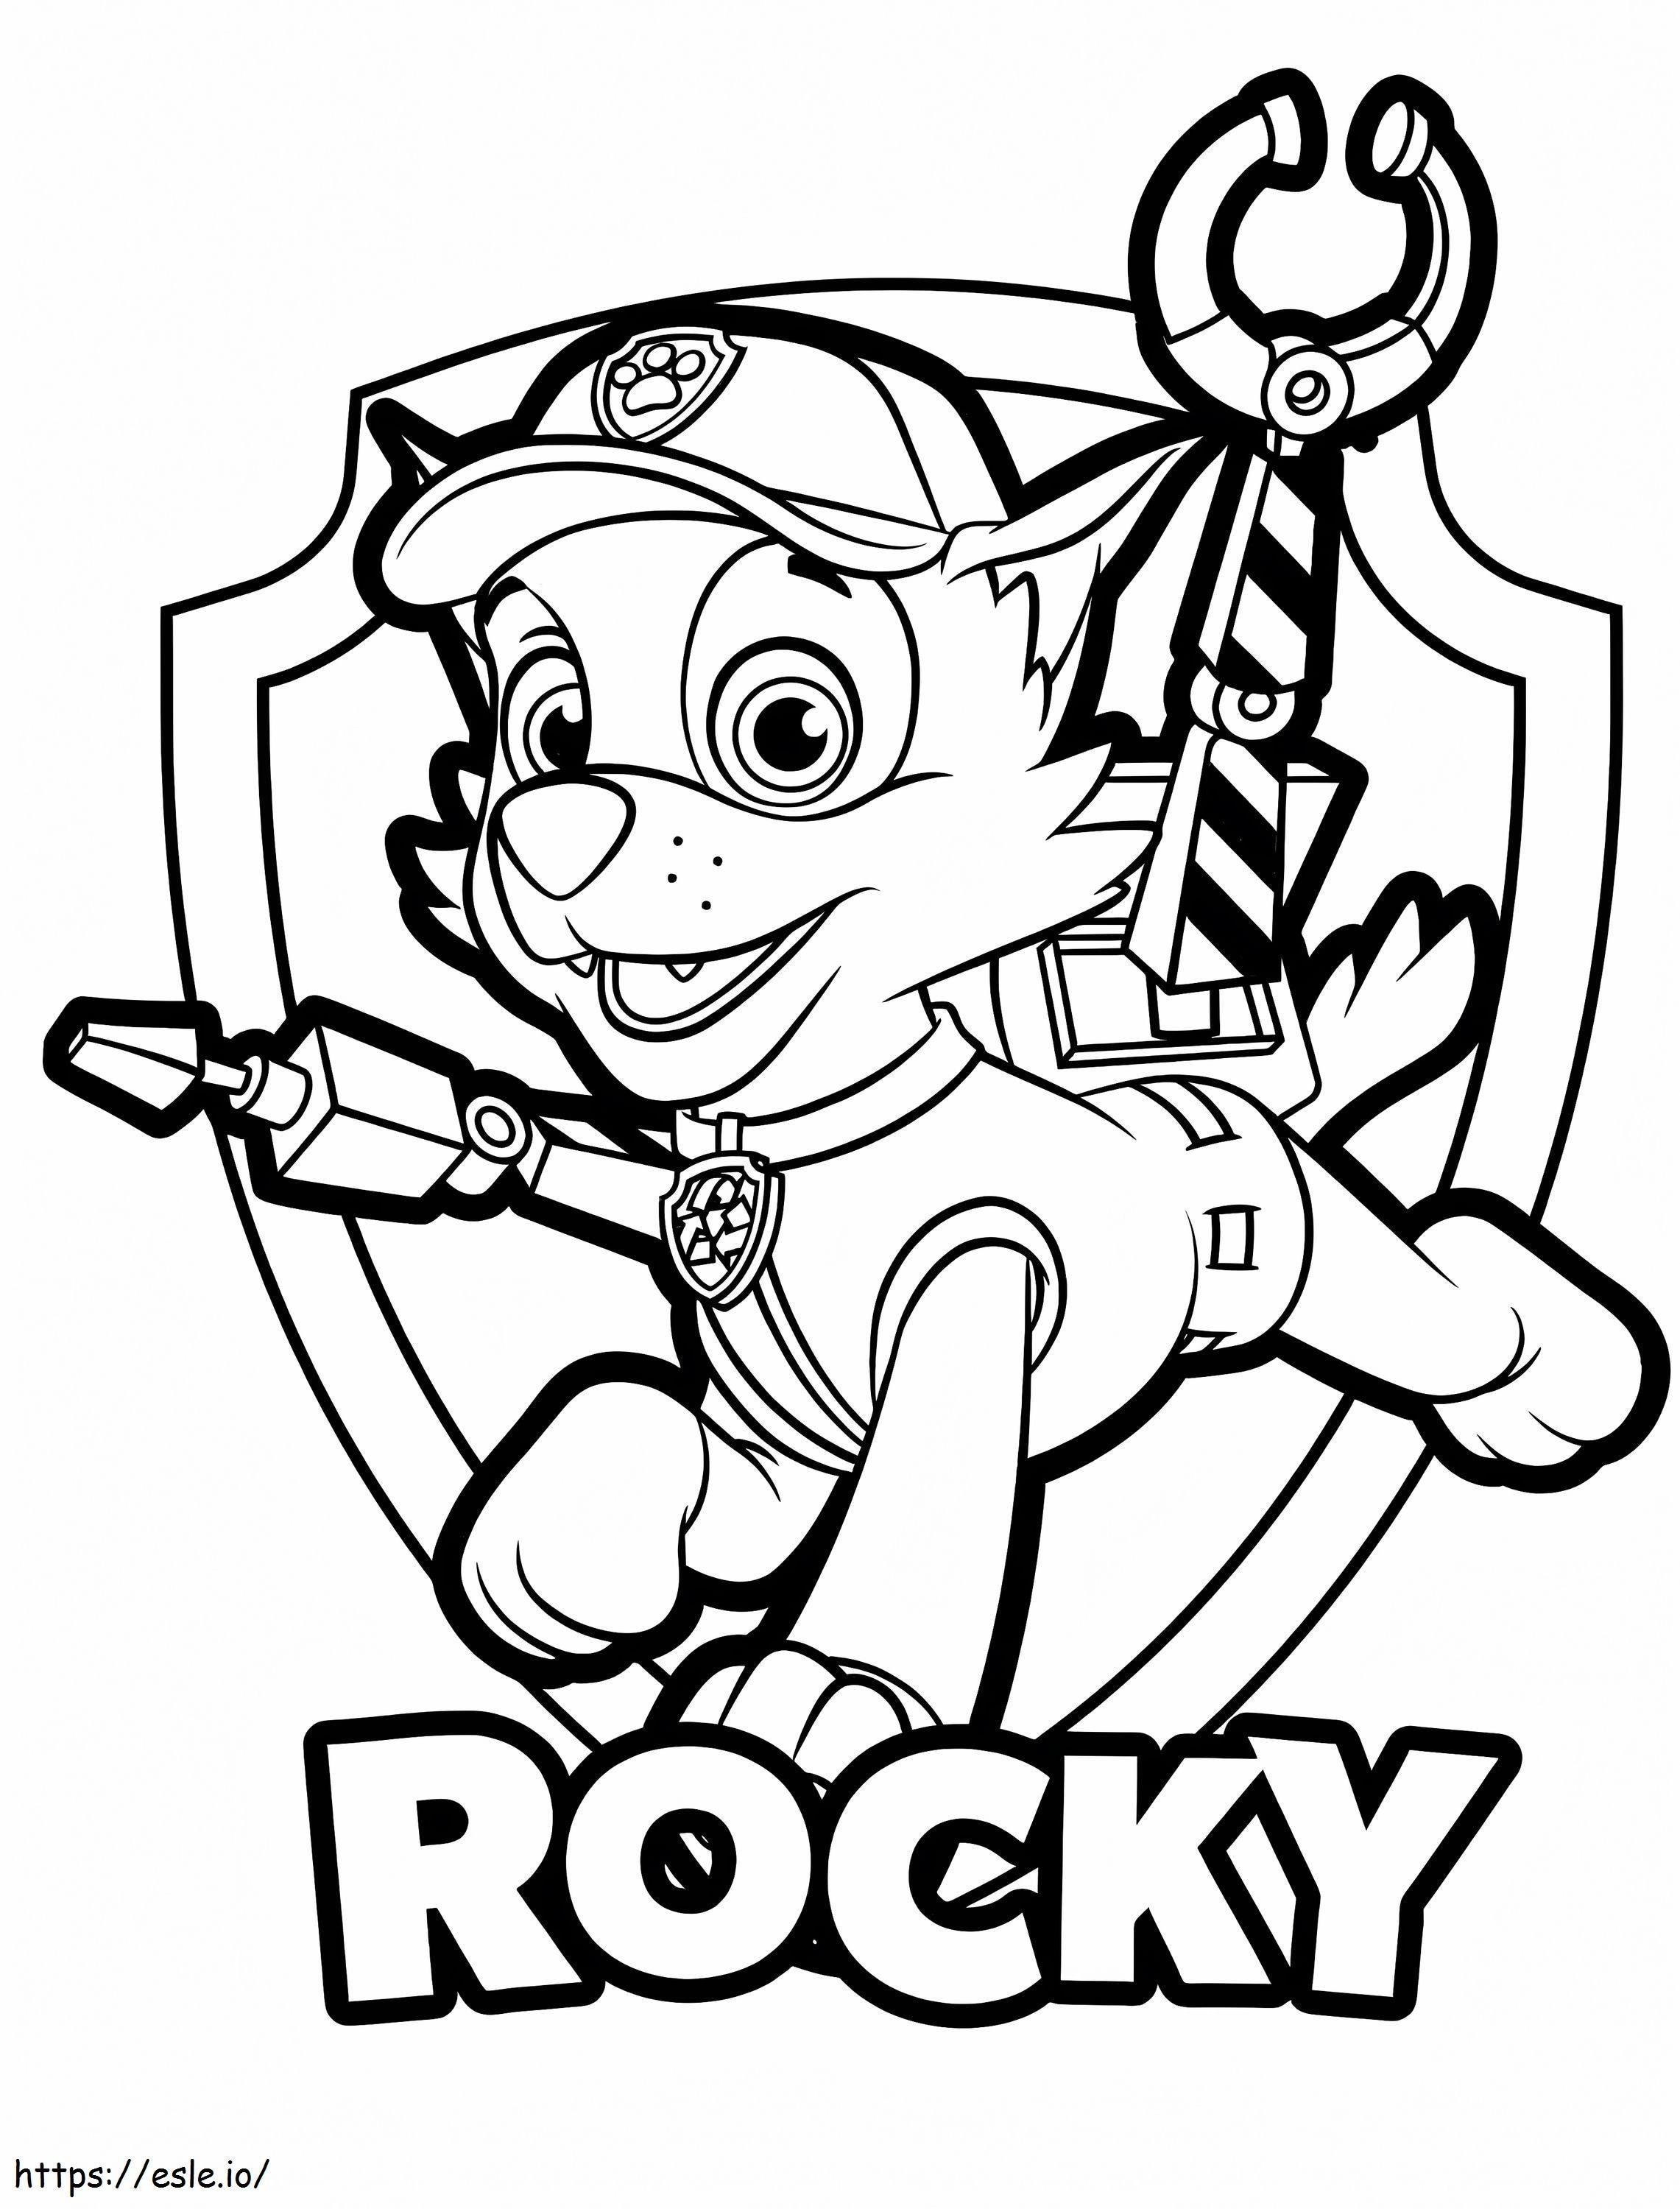 Coloriage Rocky de Paw Patrol à imprimer dessin